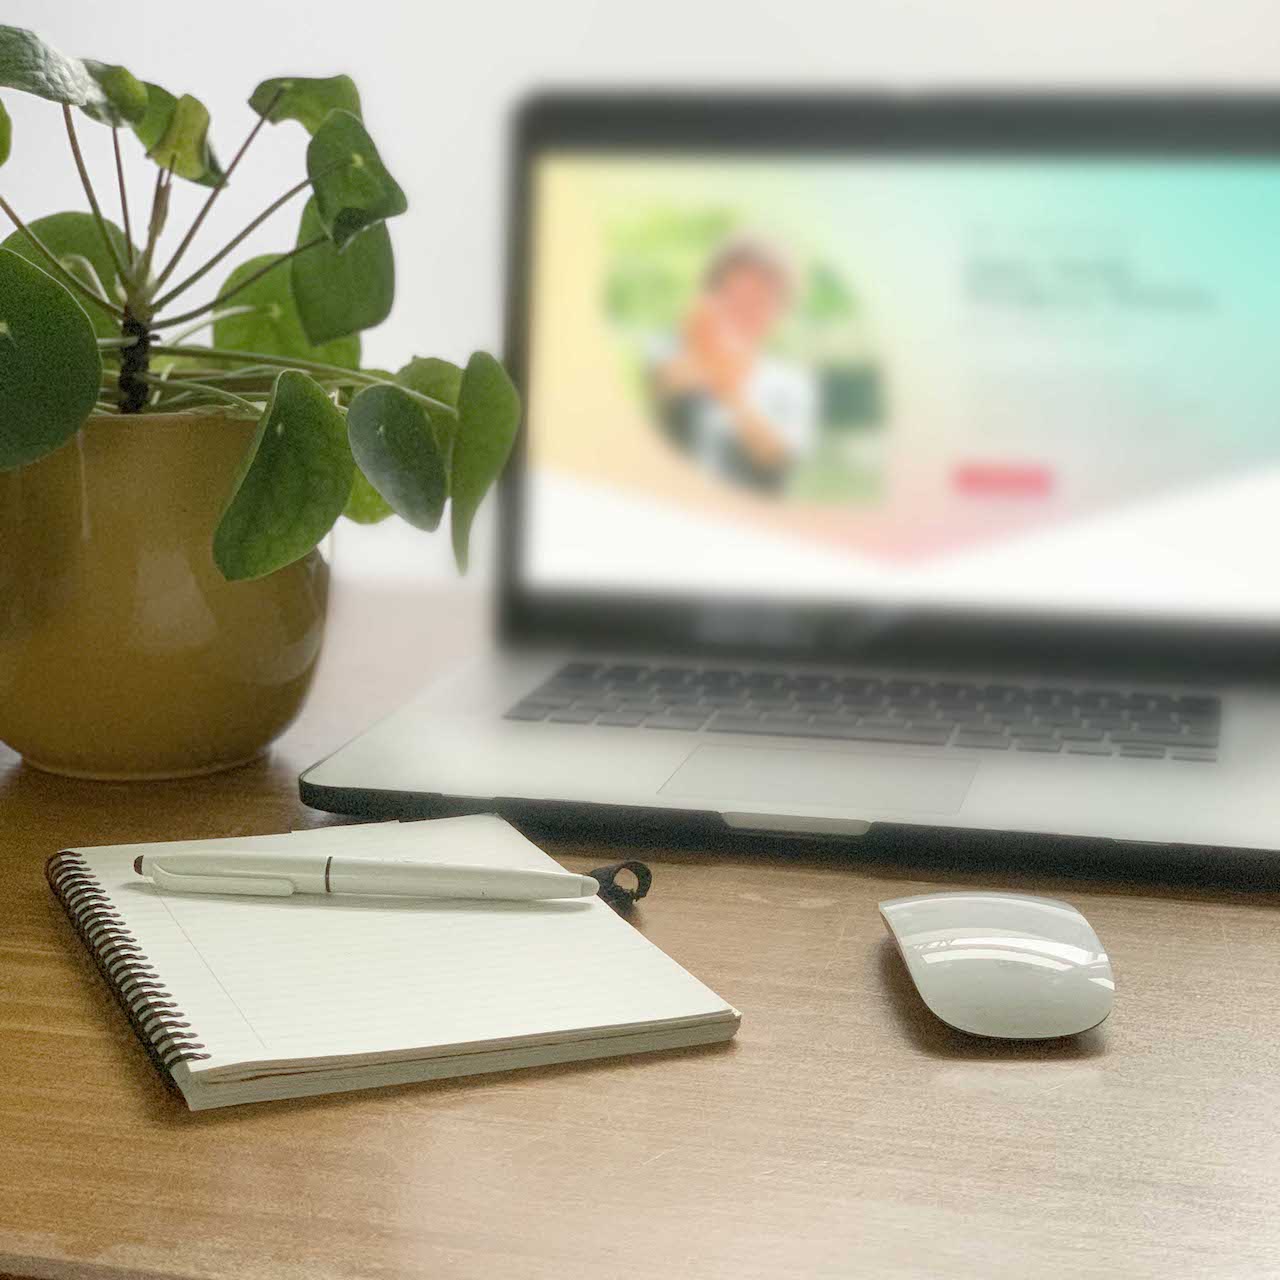 Een laptop met plant ernaast een notitie blokje met pen en een muis